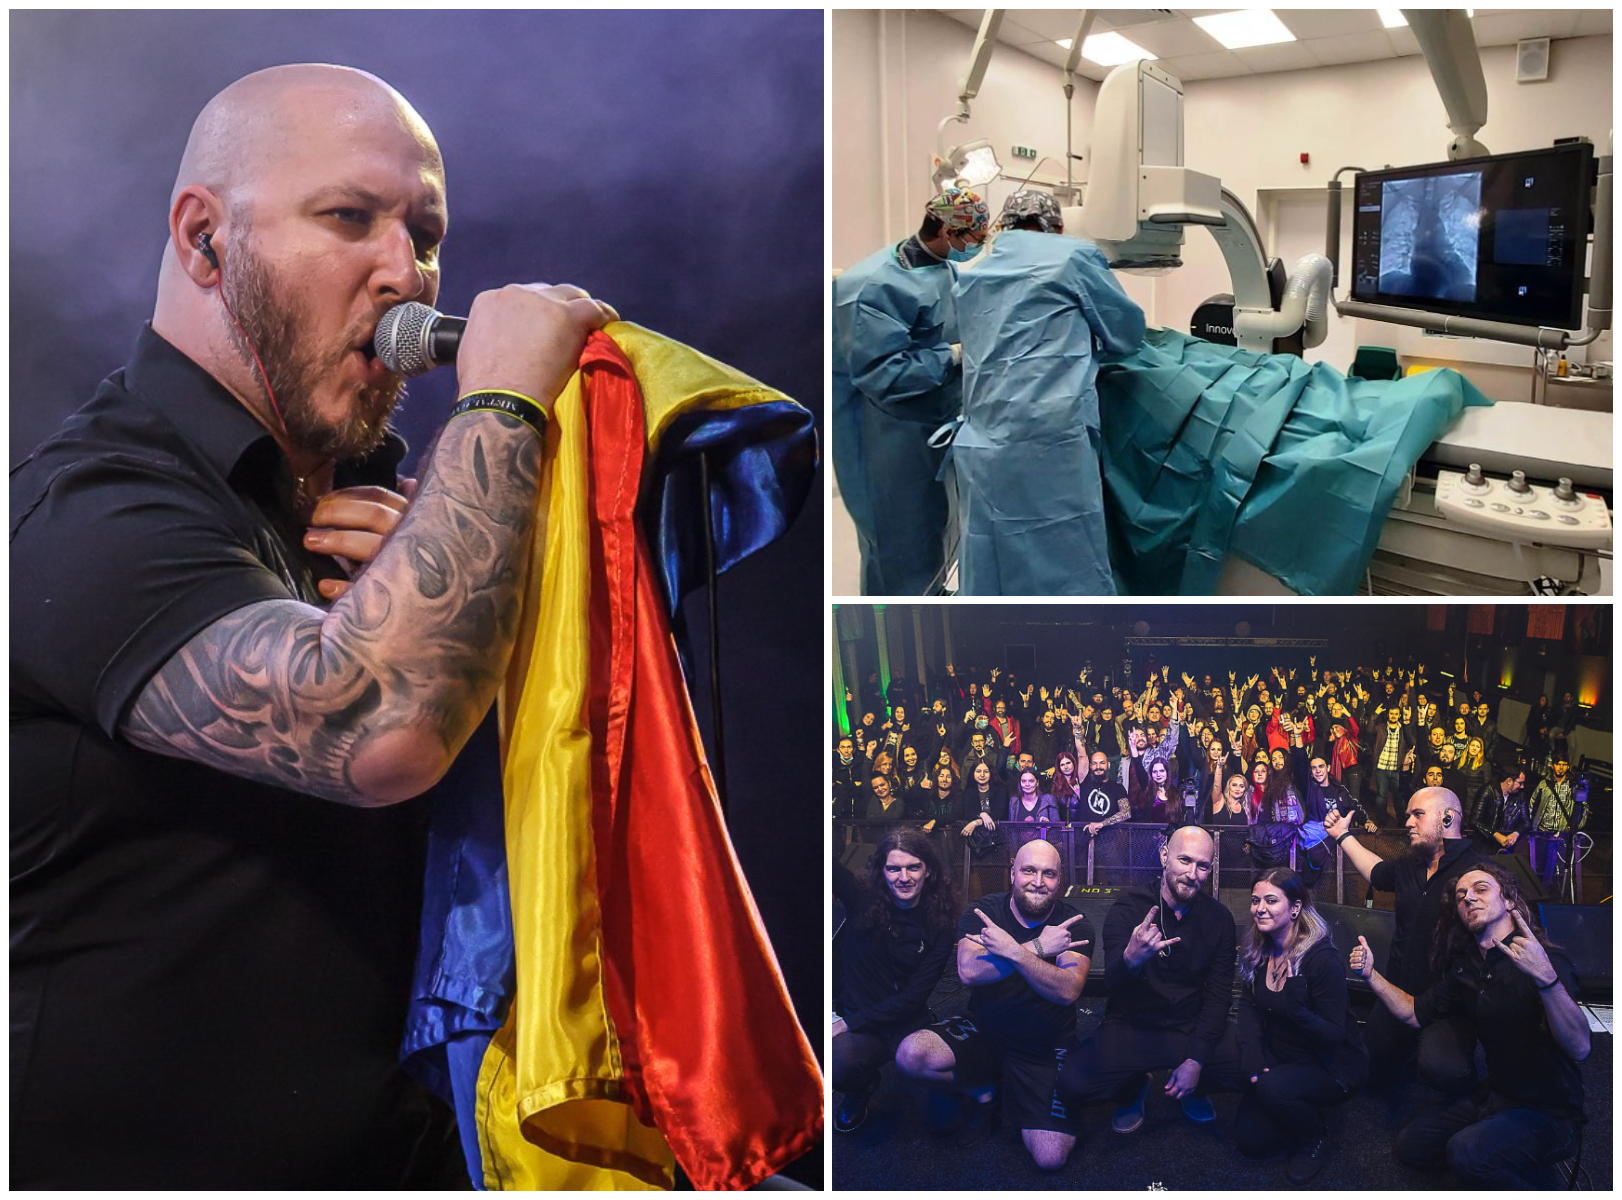 Cunoscut solist rock român a supraviețuit miraculos unui AVC! Apelul său disperat de pe patul de spital: ”Mi-a afectat capacitatea de a crea muzică, ci și de a-mi sprijini familia iubită”